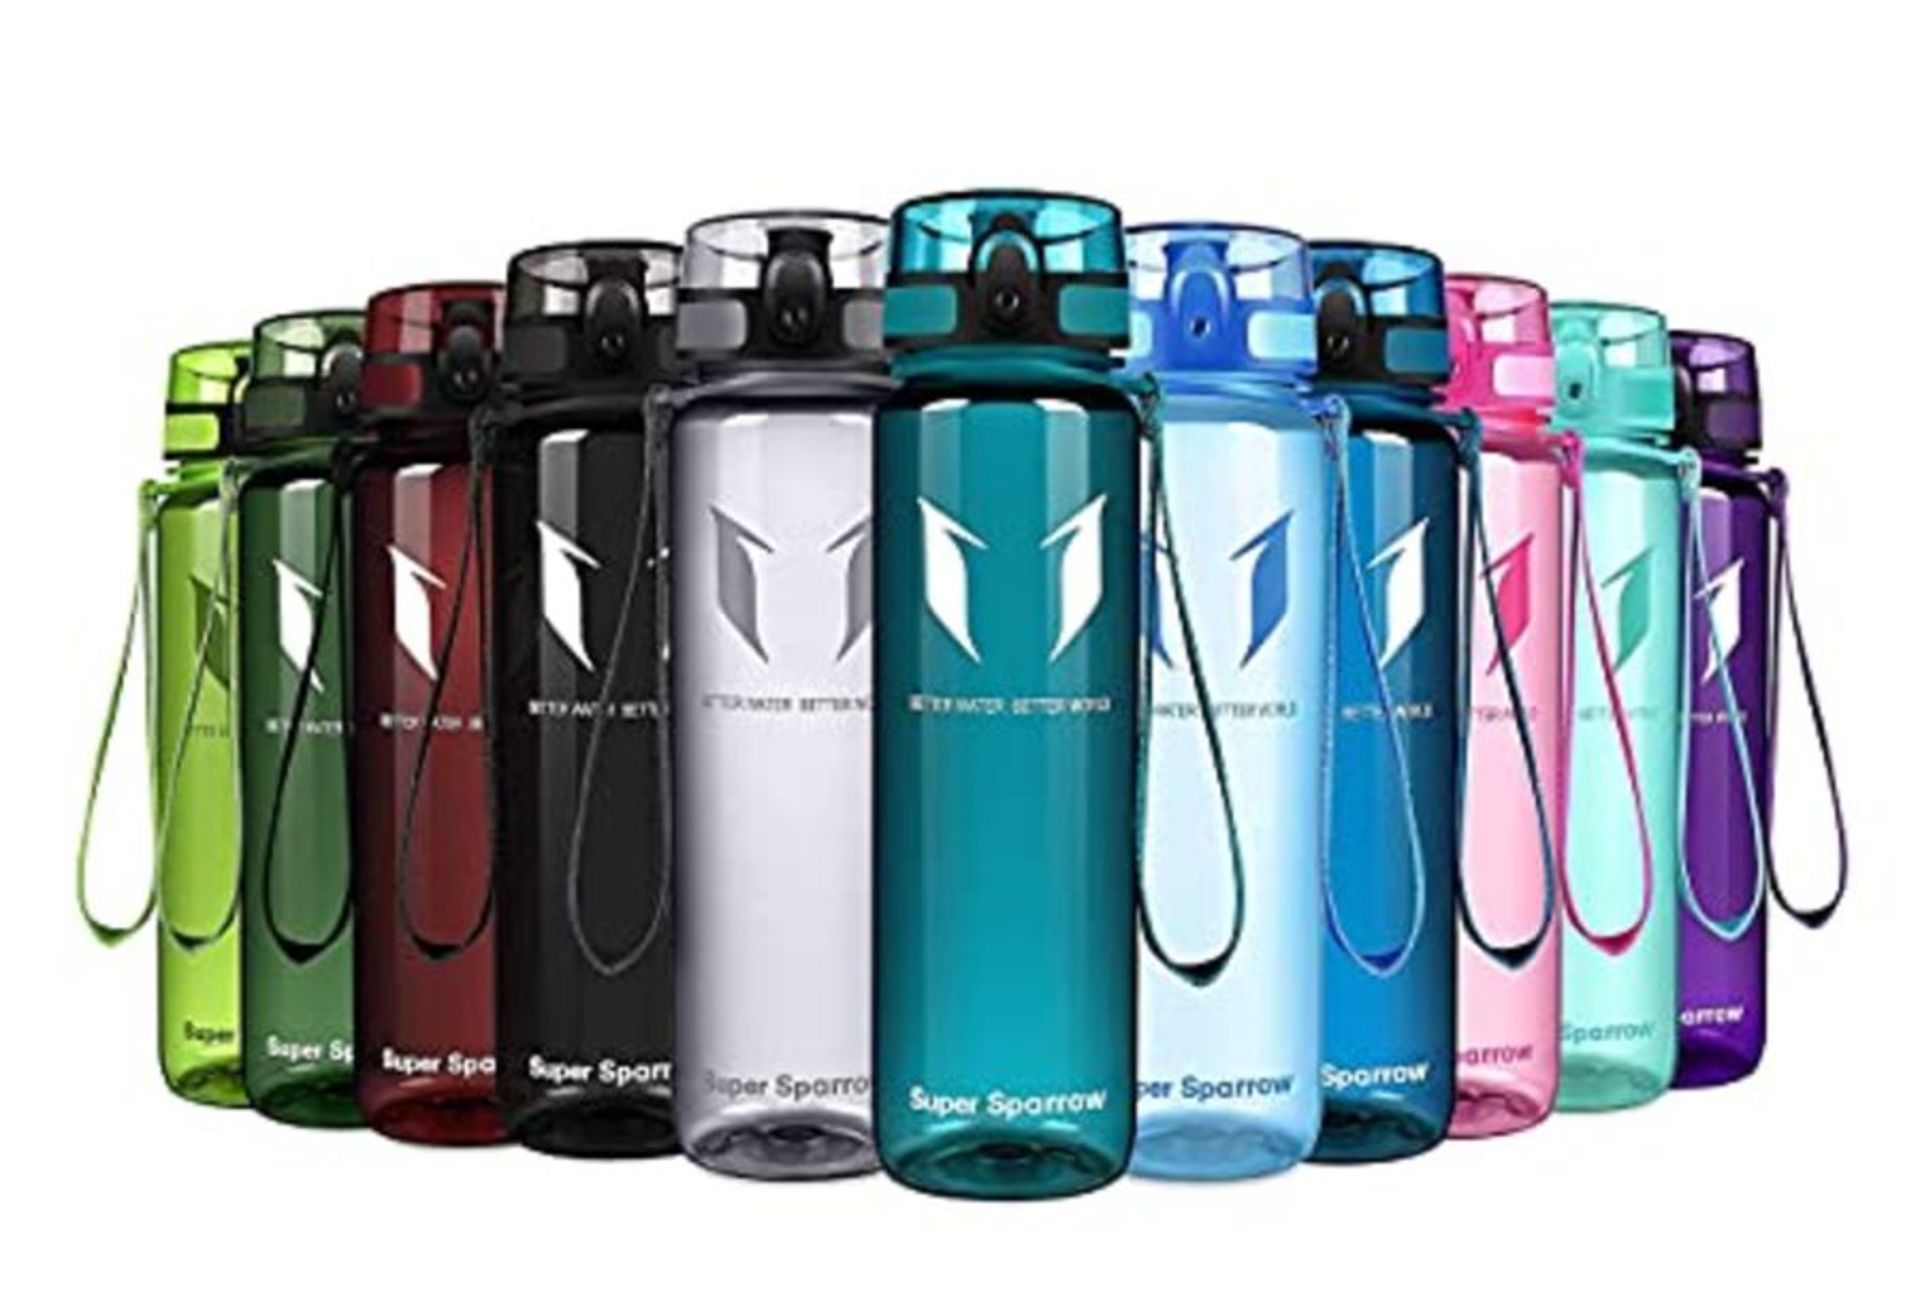 Super Sparrow Sports Water Bottle - 1000ml - Non-Toxic BPA Free & Eco-Friendly Tritan